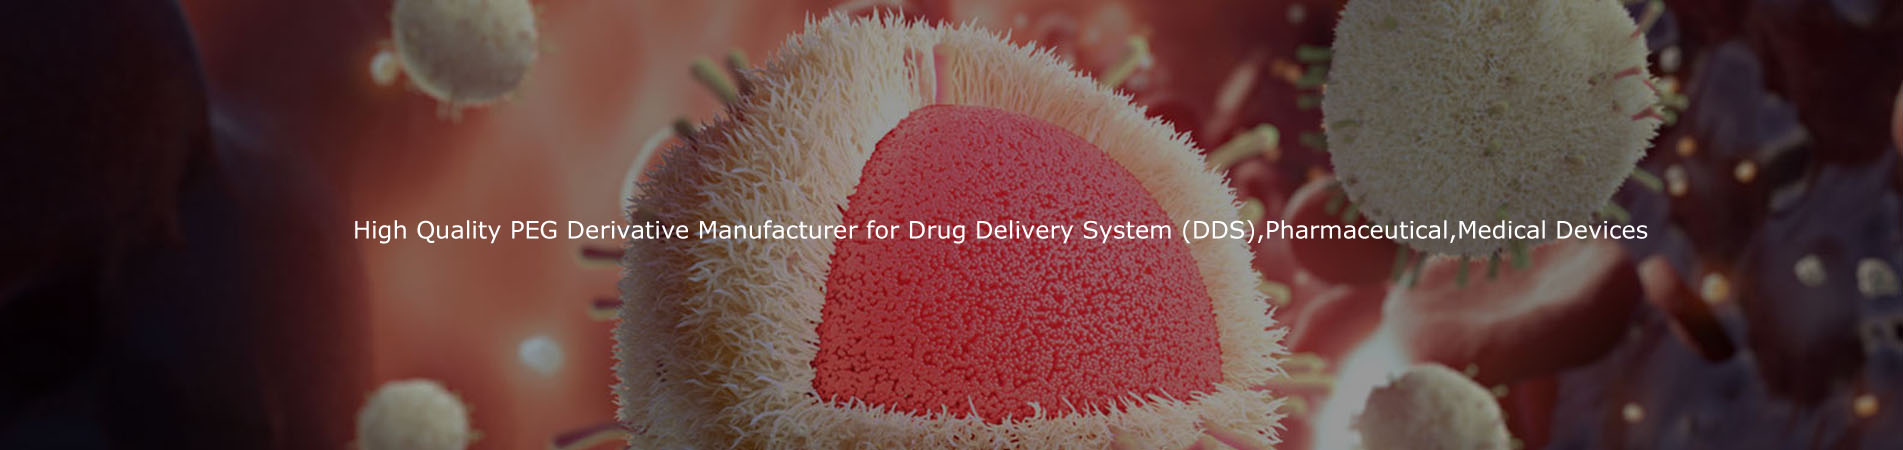 Wysokiej jakości producent pochodnych PEG dla systemu dostarczania leków (DDS), farmaceutyczne, medyczne